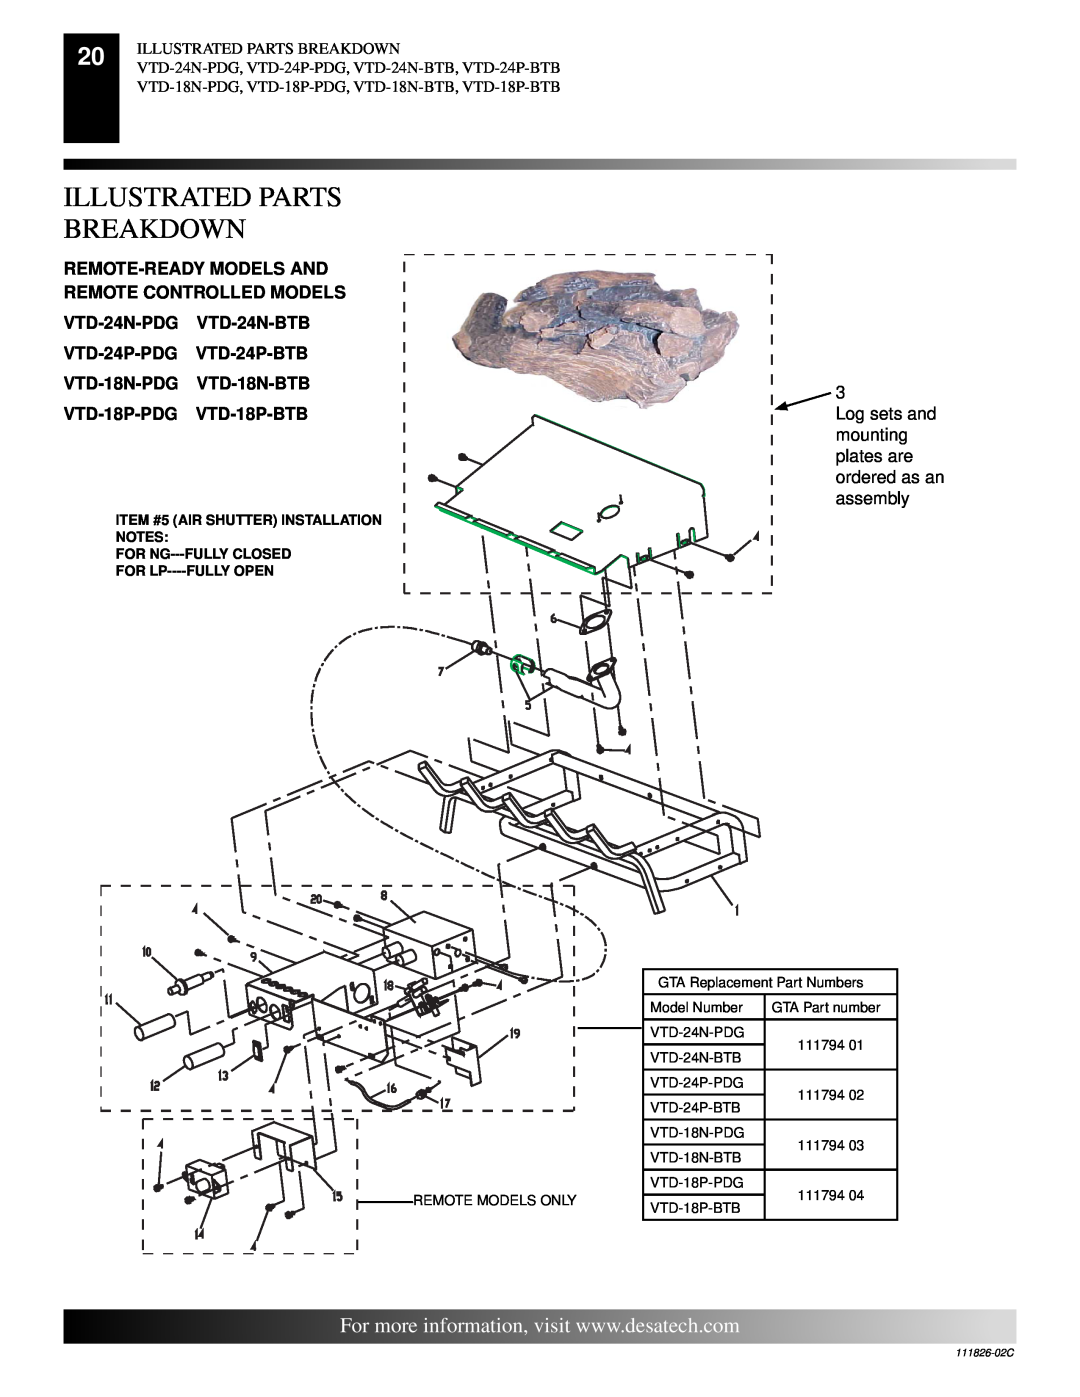 Desa VTD-24N-PDG, VTD-24N-BTB, VTD-18P-PDG Illustrated Parts Breakdown, ITEM #5 AIR SHUTTER INSTALLATION NOTES, 111826-02C 